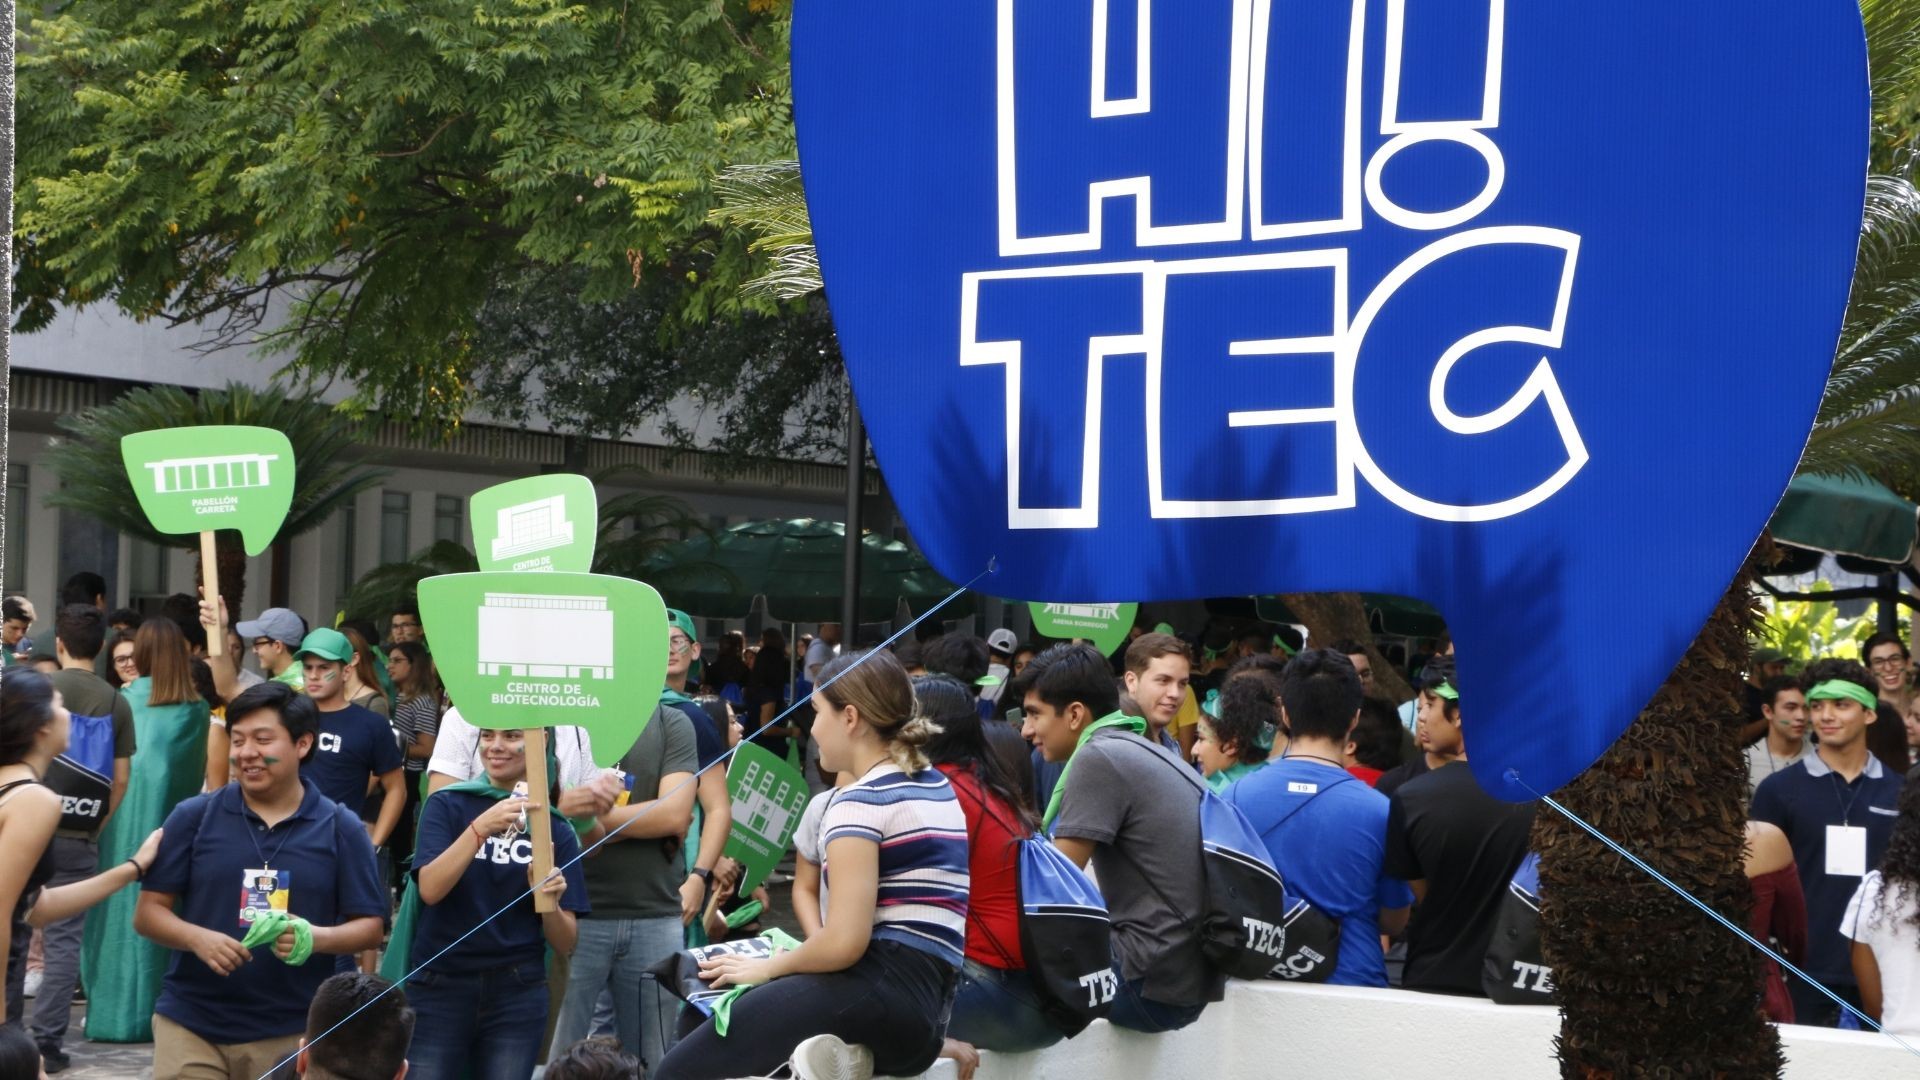 HiTec-Fest-Tec-de-Monterrey